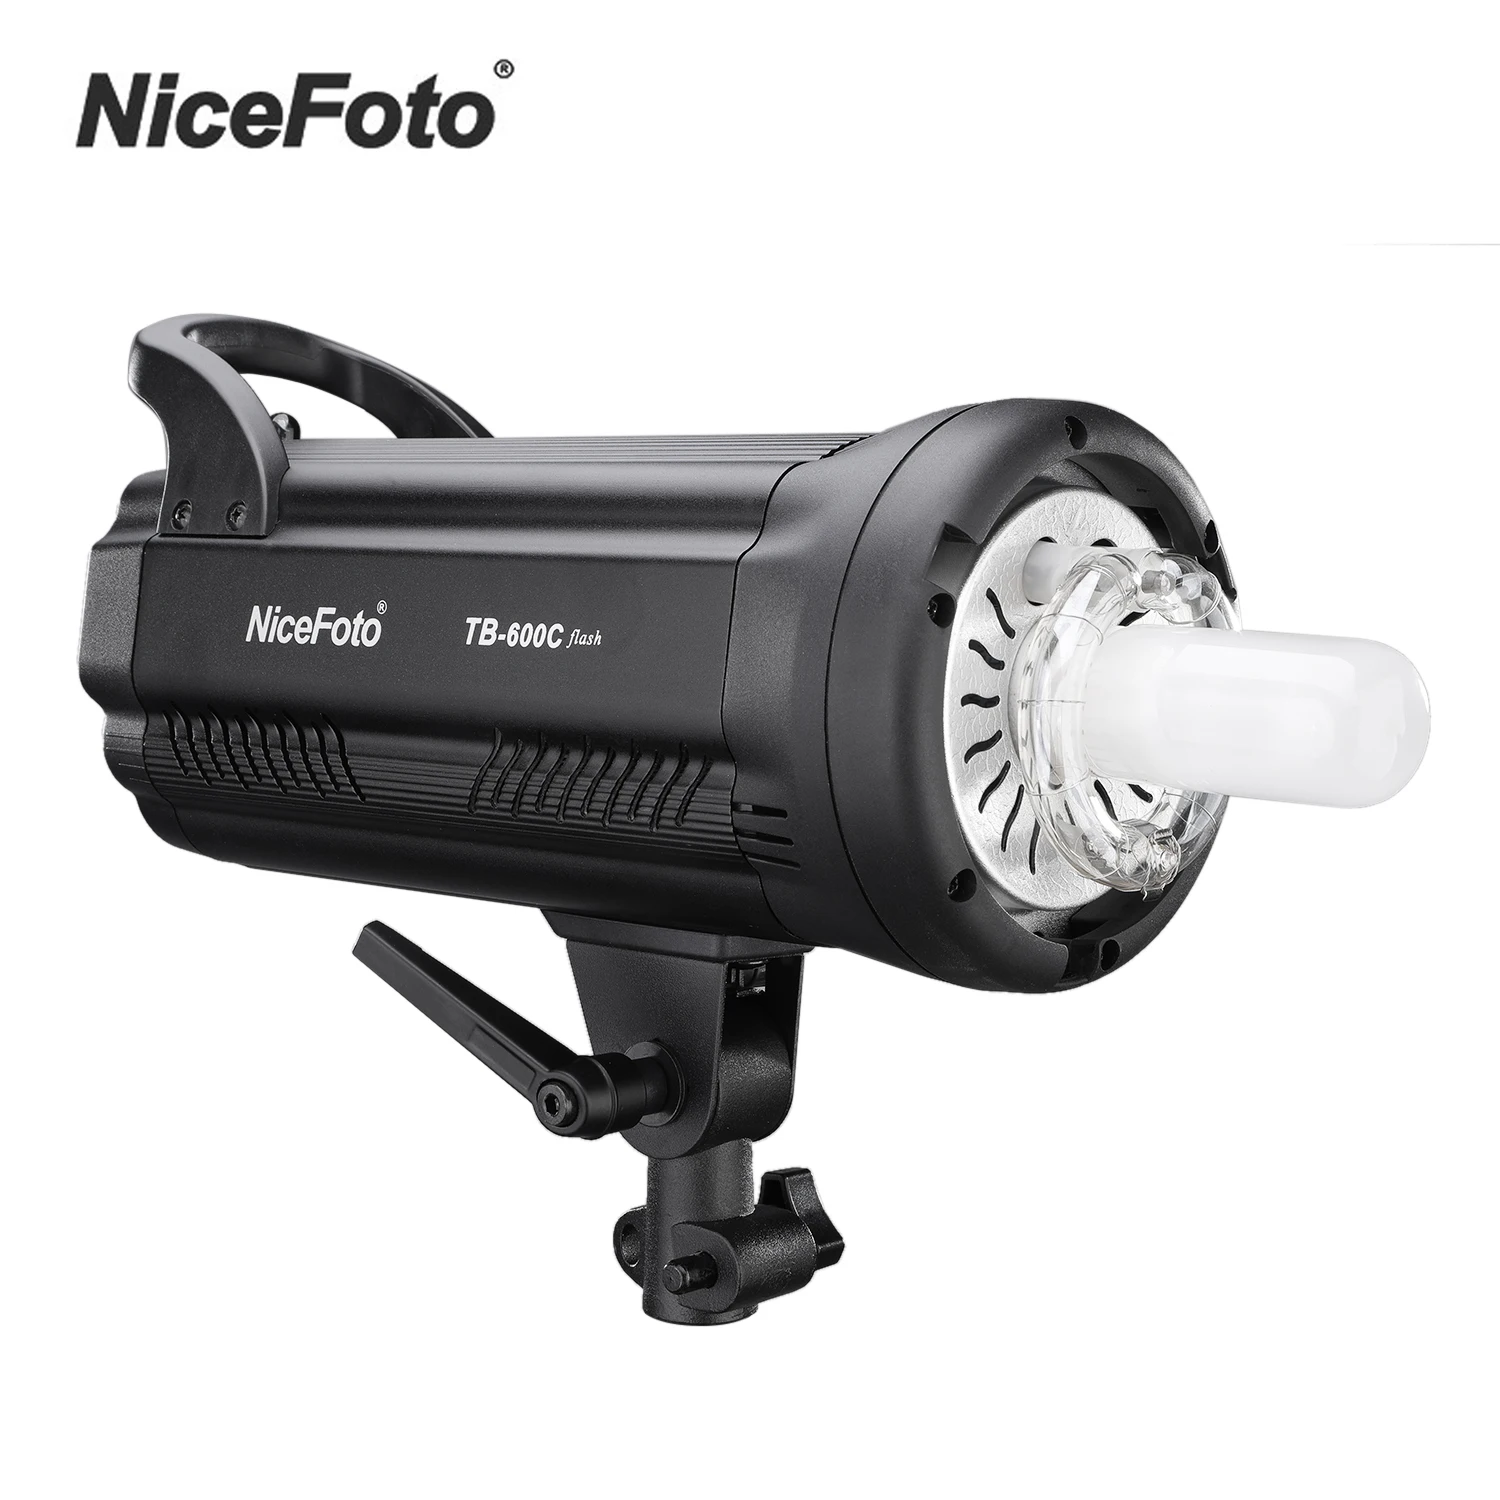 

NiceFoto TB-600C Studio Flash Light Strobe светильник Lamp GN90 LED Display Bowens Mount для студийной портретной свадебной фотографии